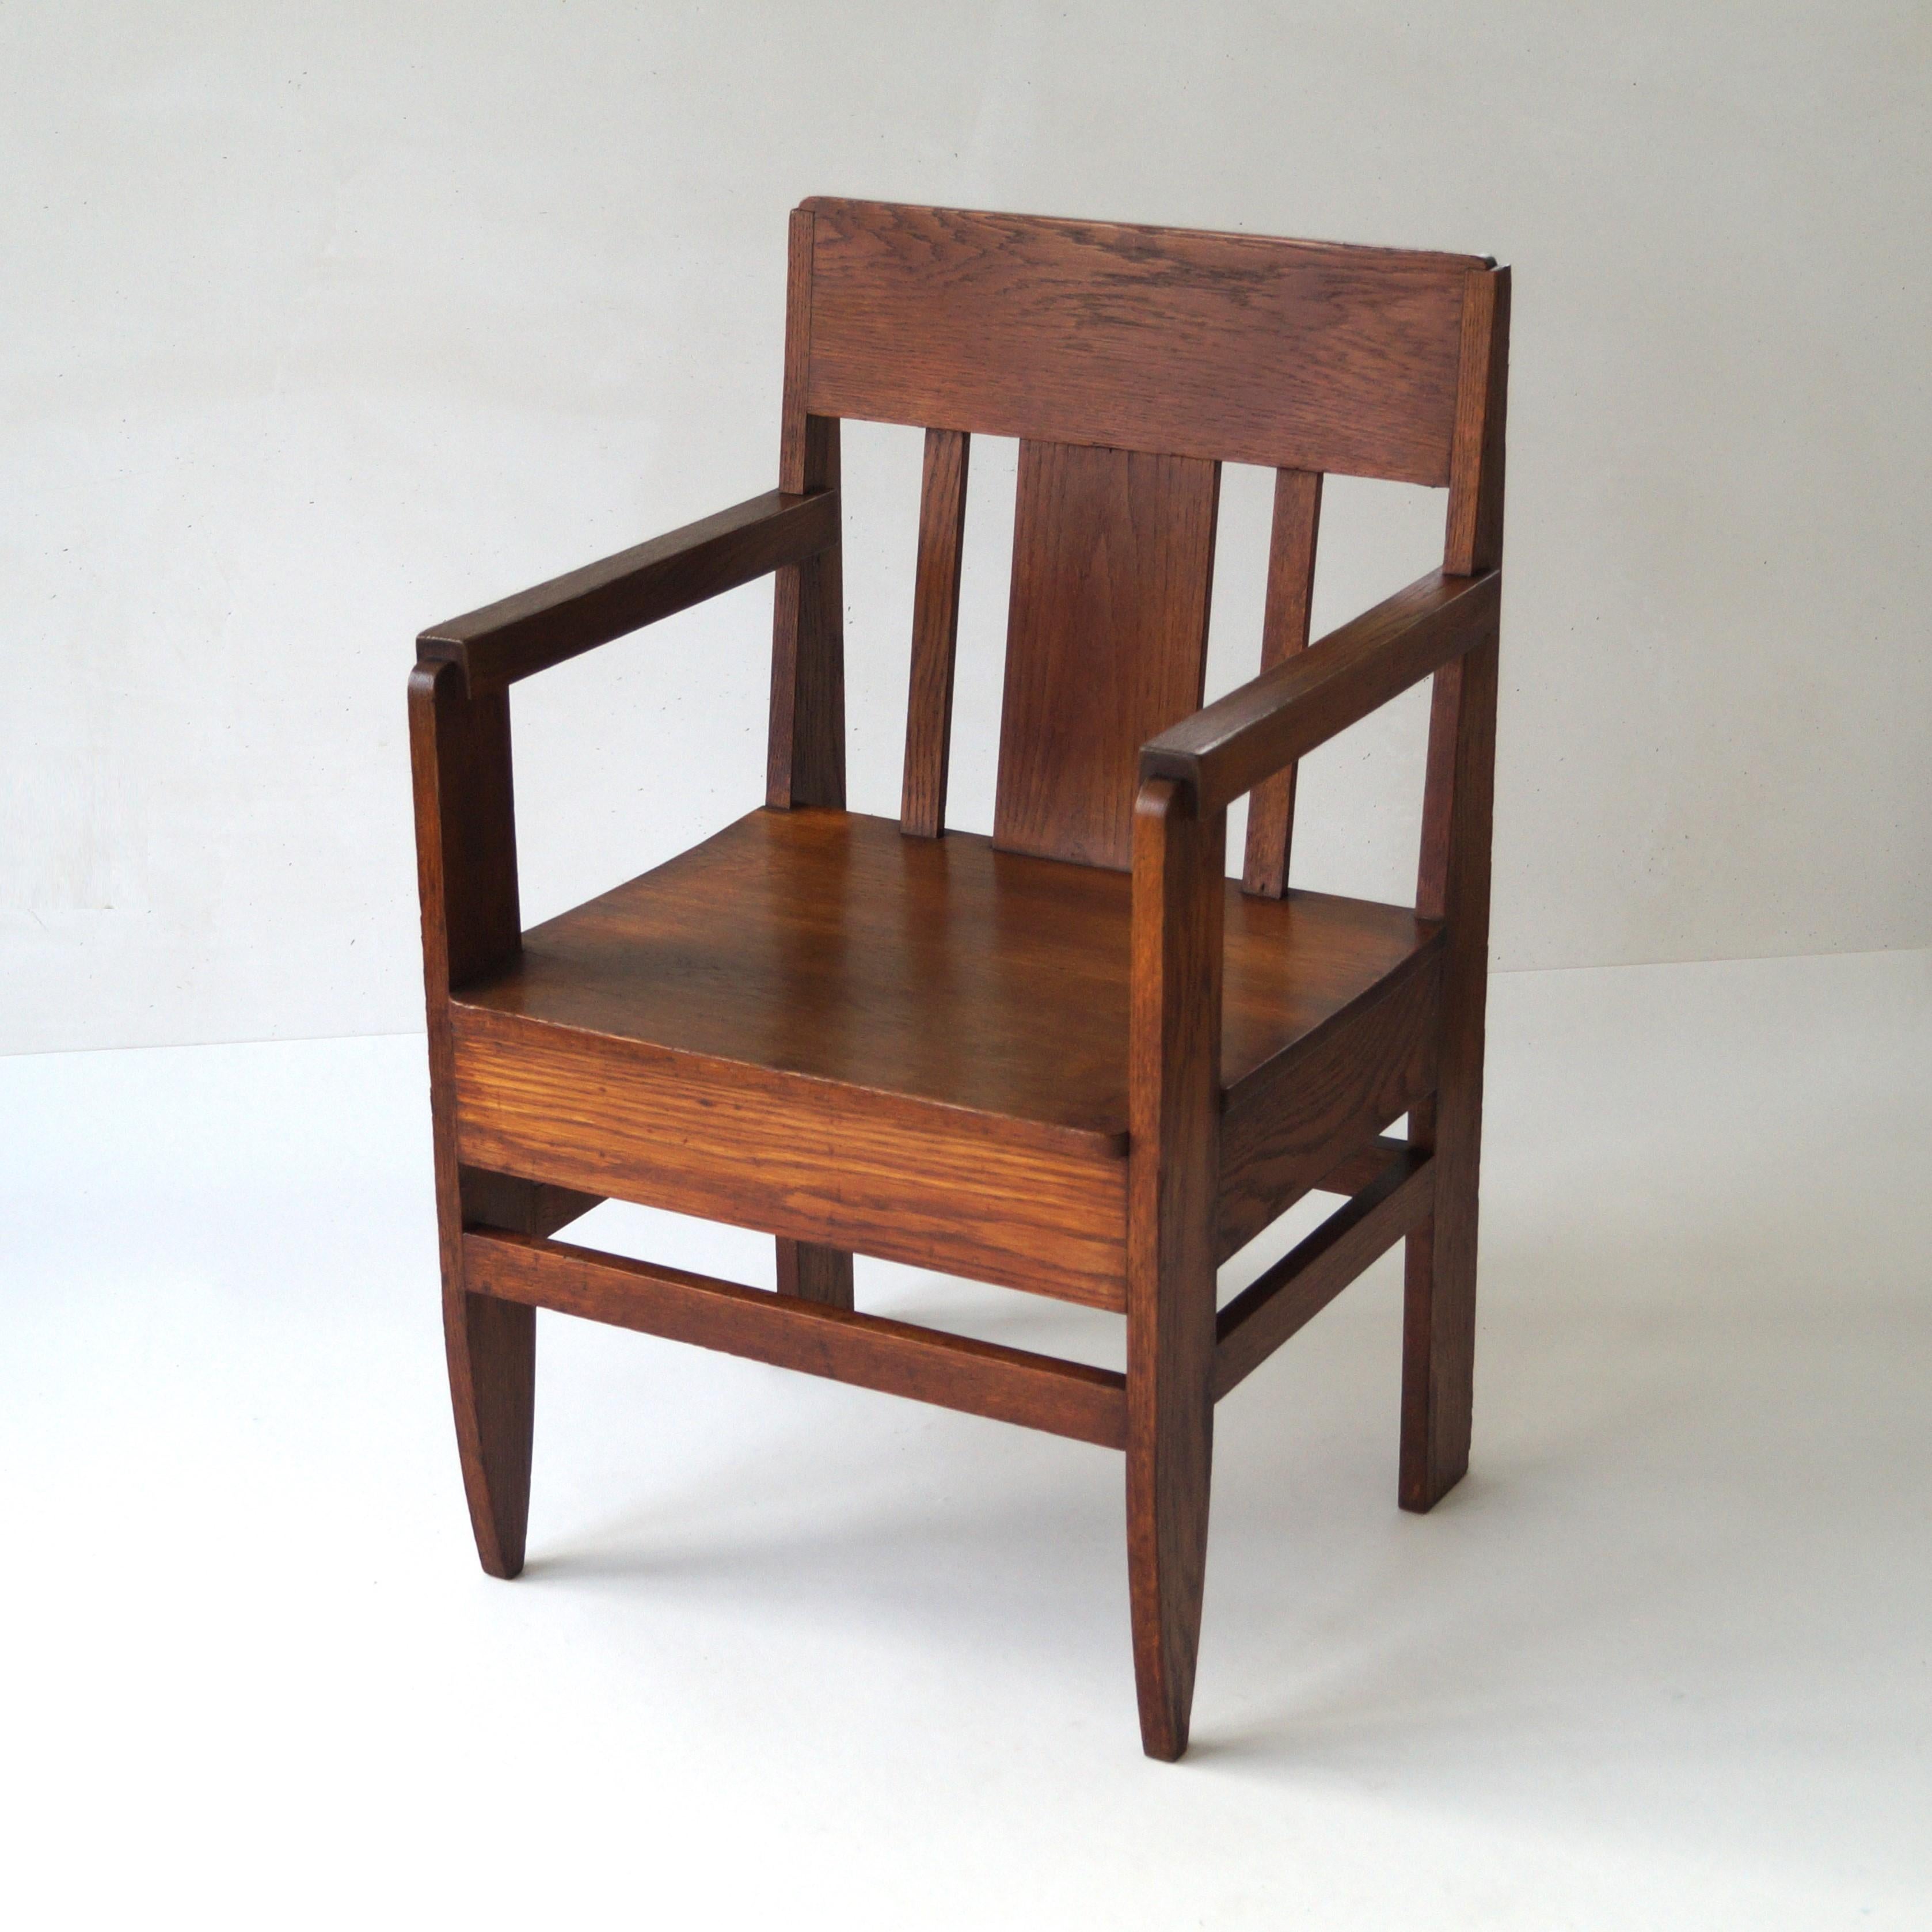 Fauteuil architectural hollandais ancien en chêne massif et au design extraordinaire. La chaise a un aspect robuste et un poids élevé. Il n'en reste pas moins que sa taille et sa hauteur sont modestes et qu'il convient parfaitement comme chaise